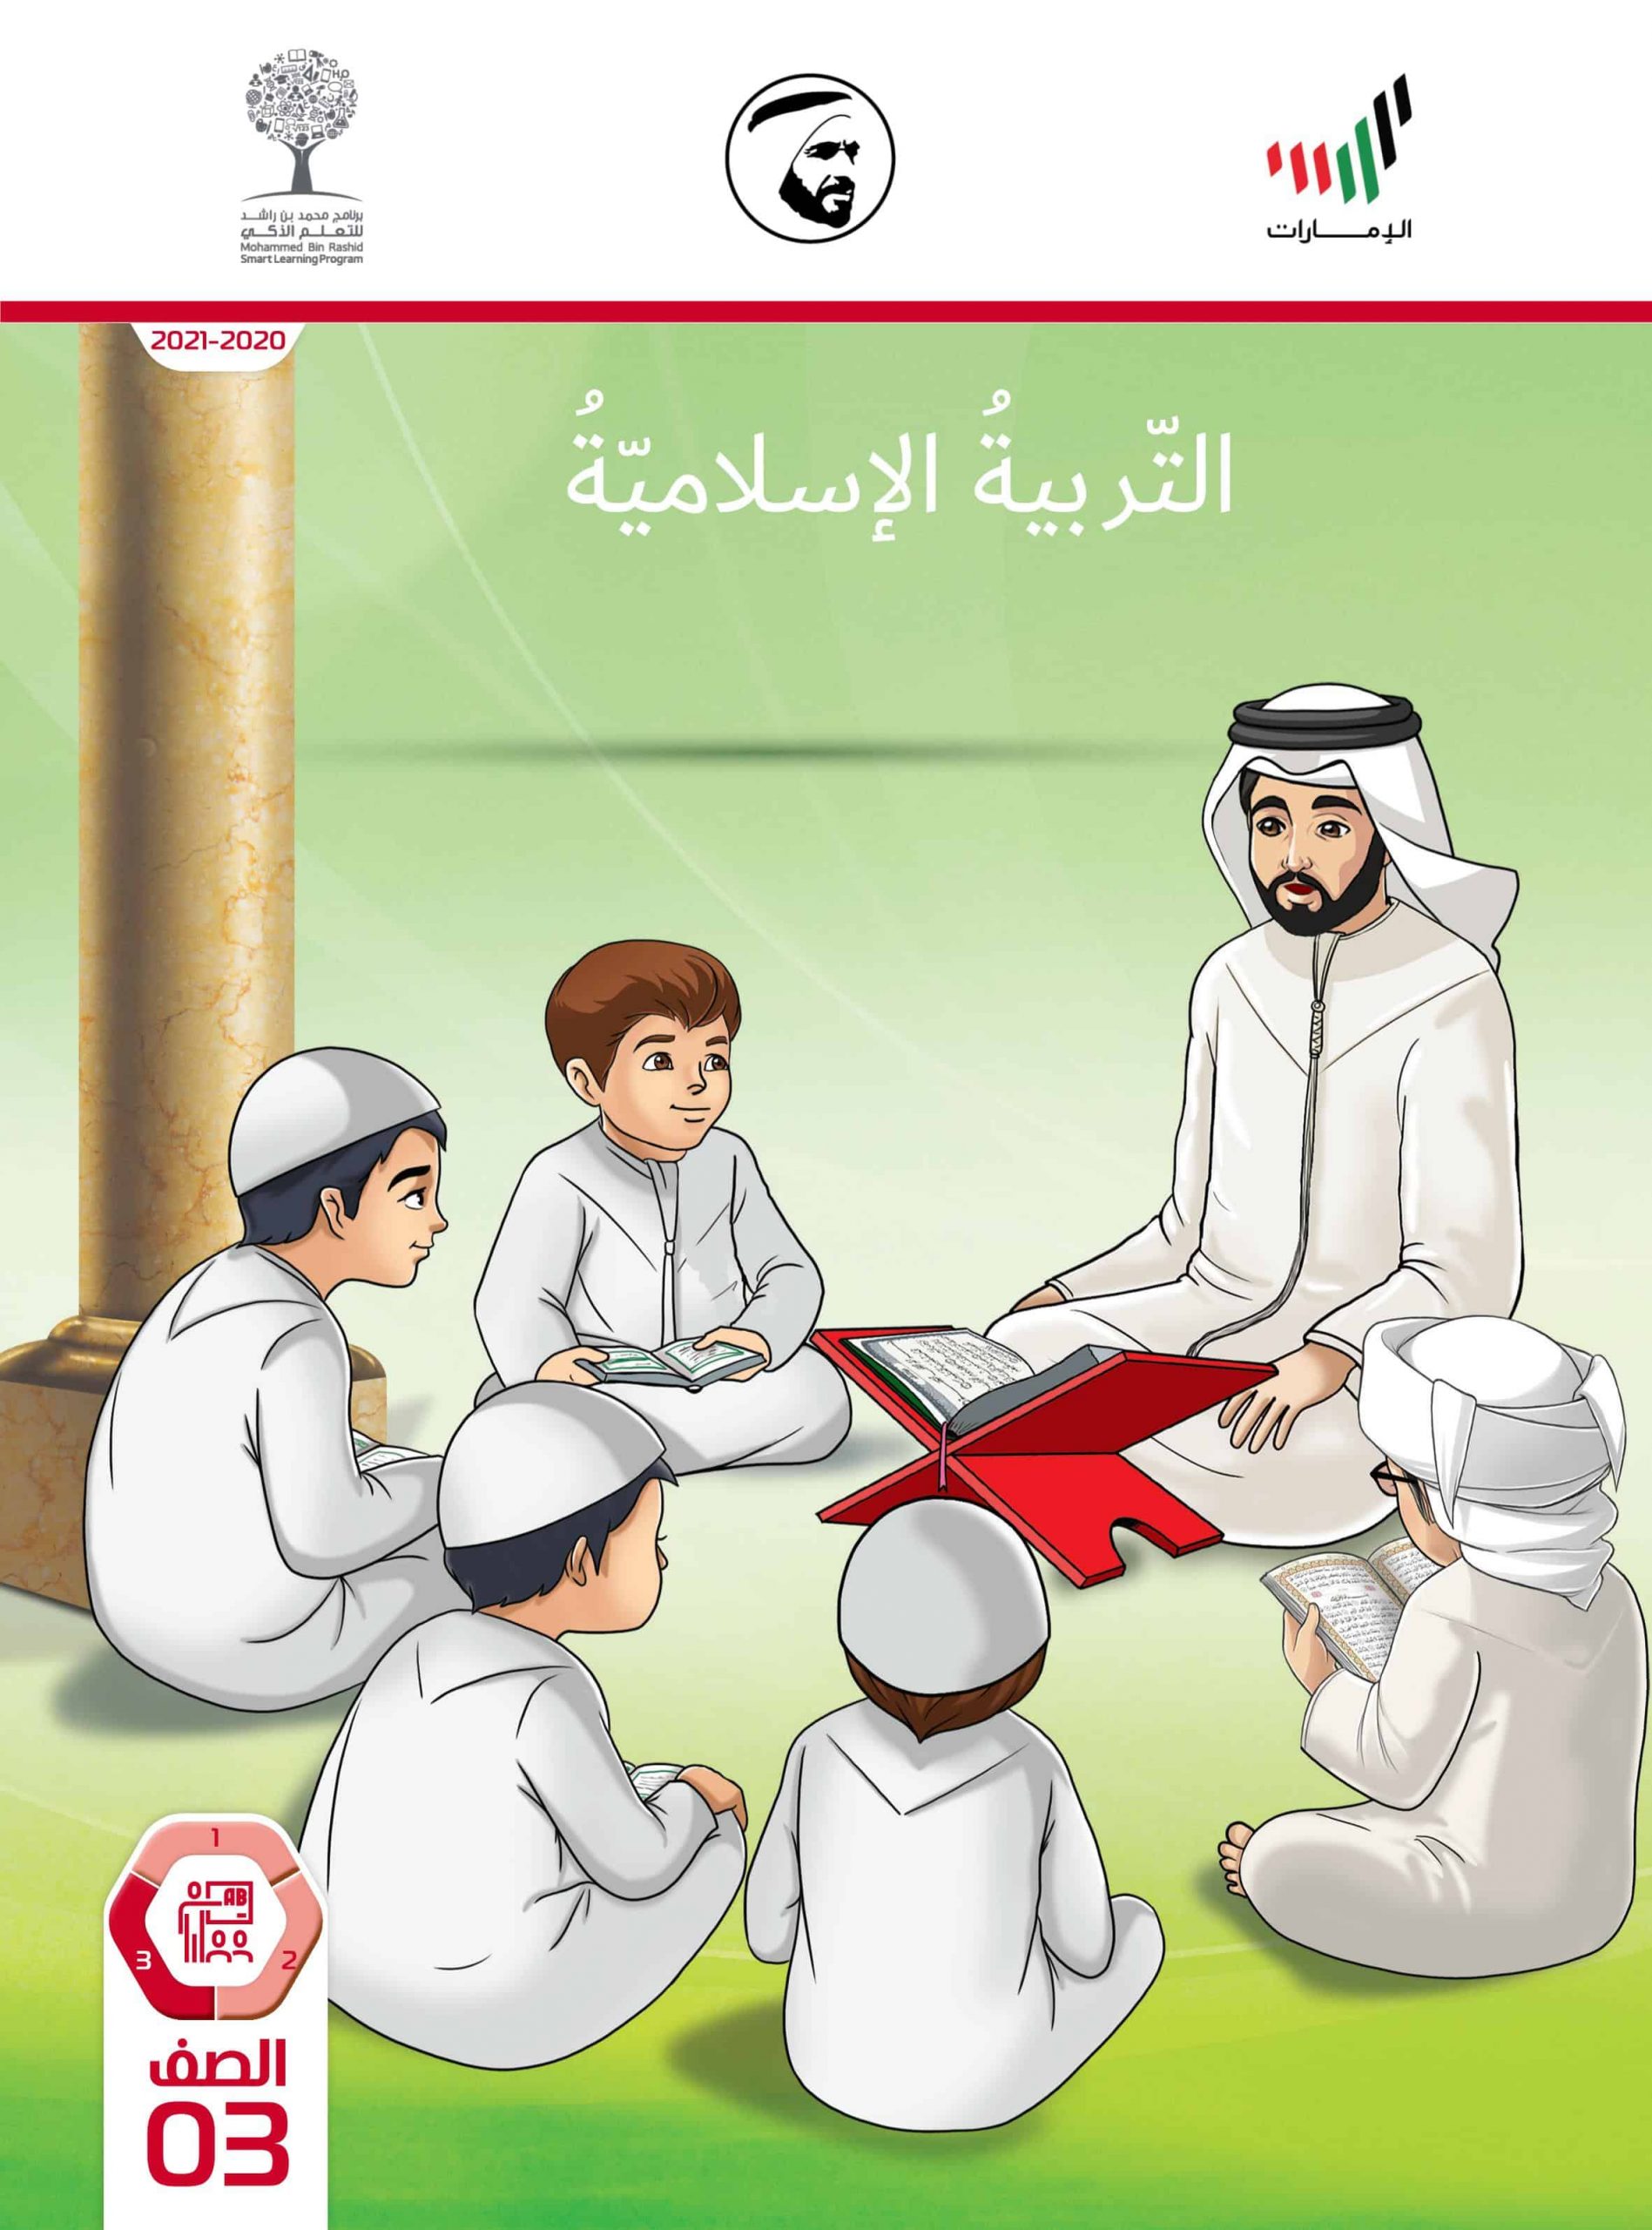 دليل المعلم الفصل الدراسي الثالث 2020-2021 الصف الثالث مادة التربية الإسلامية